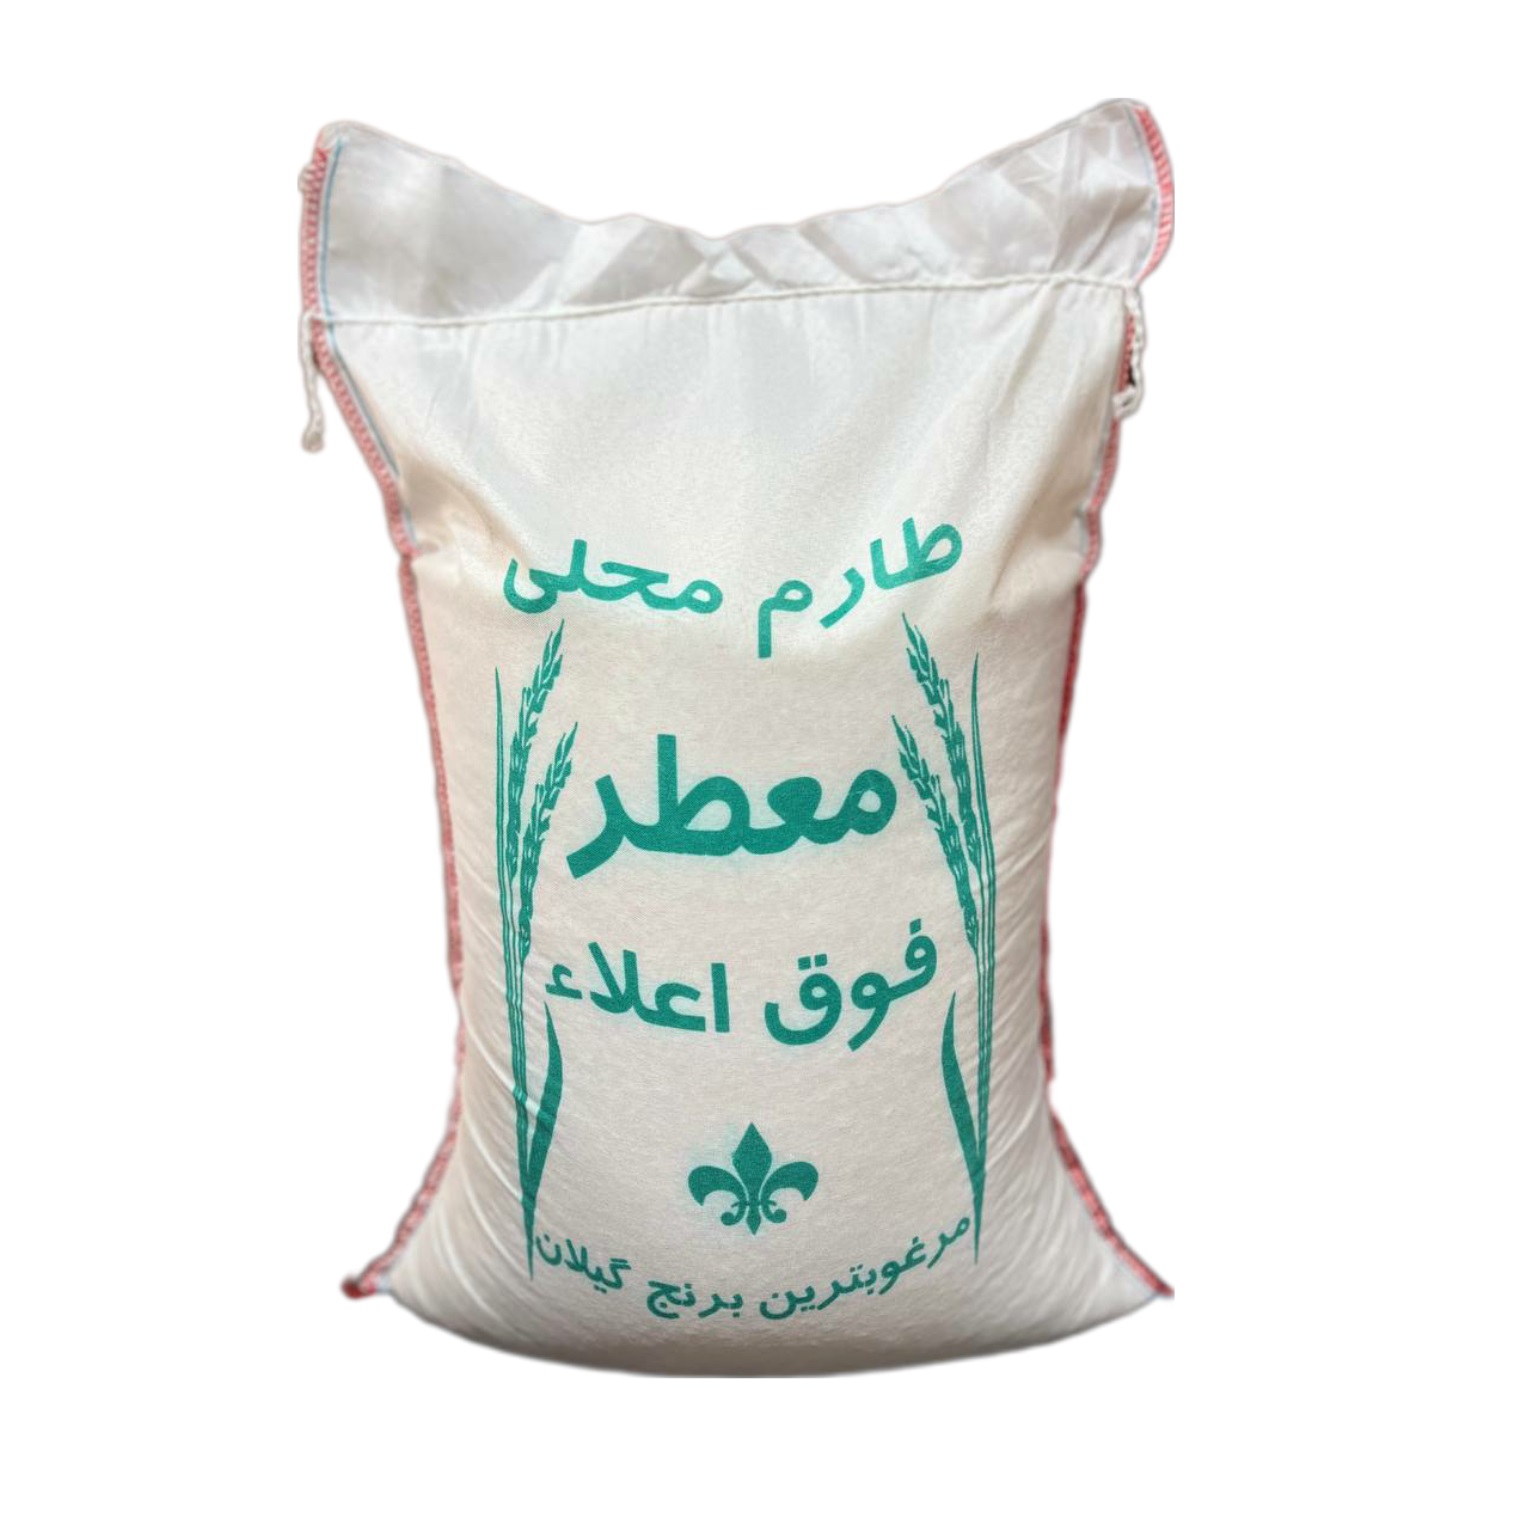 نکته خرید - قیمت روز برنج طارم محلی معطر گیلان - 10 کیلوگرم خرید